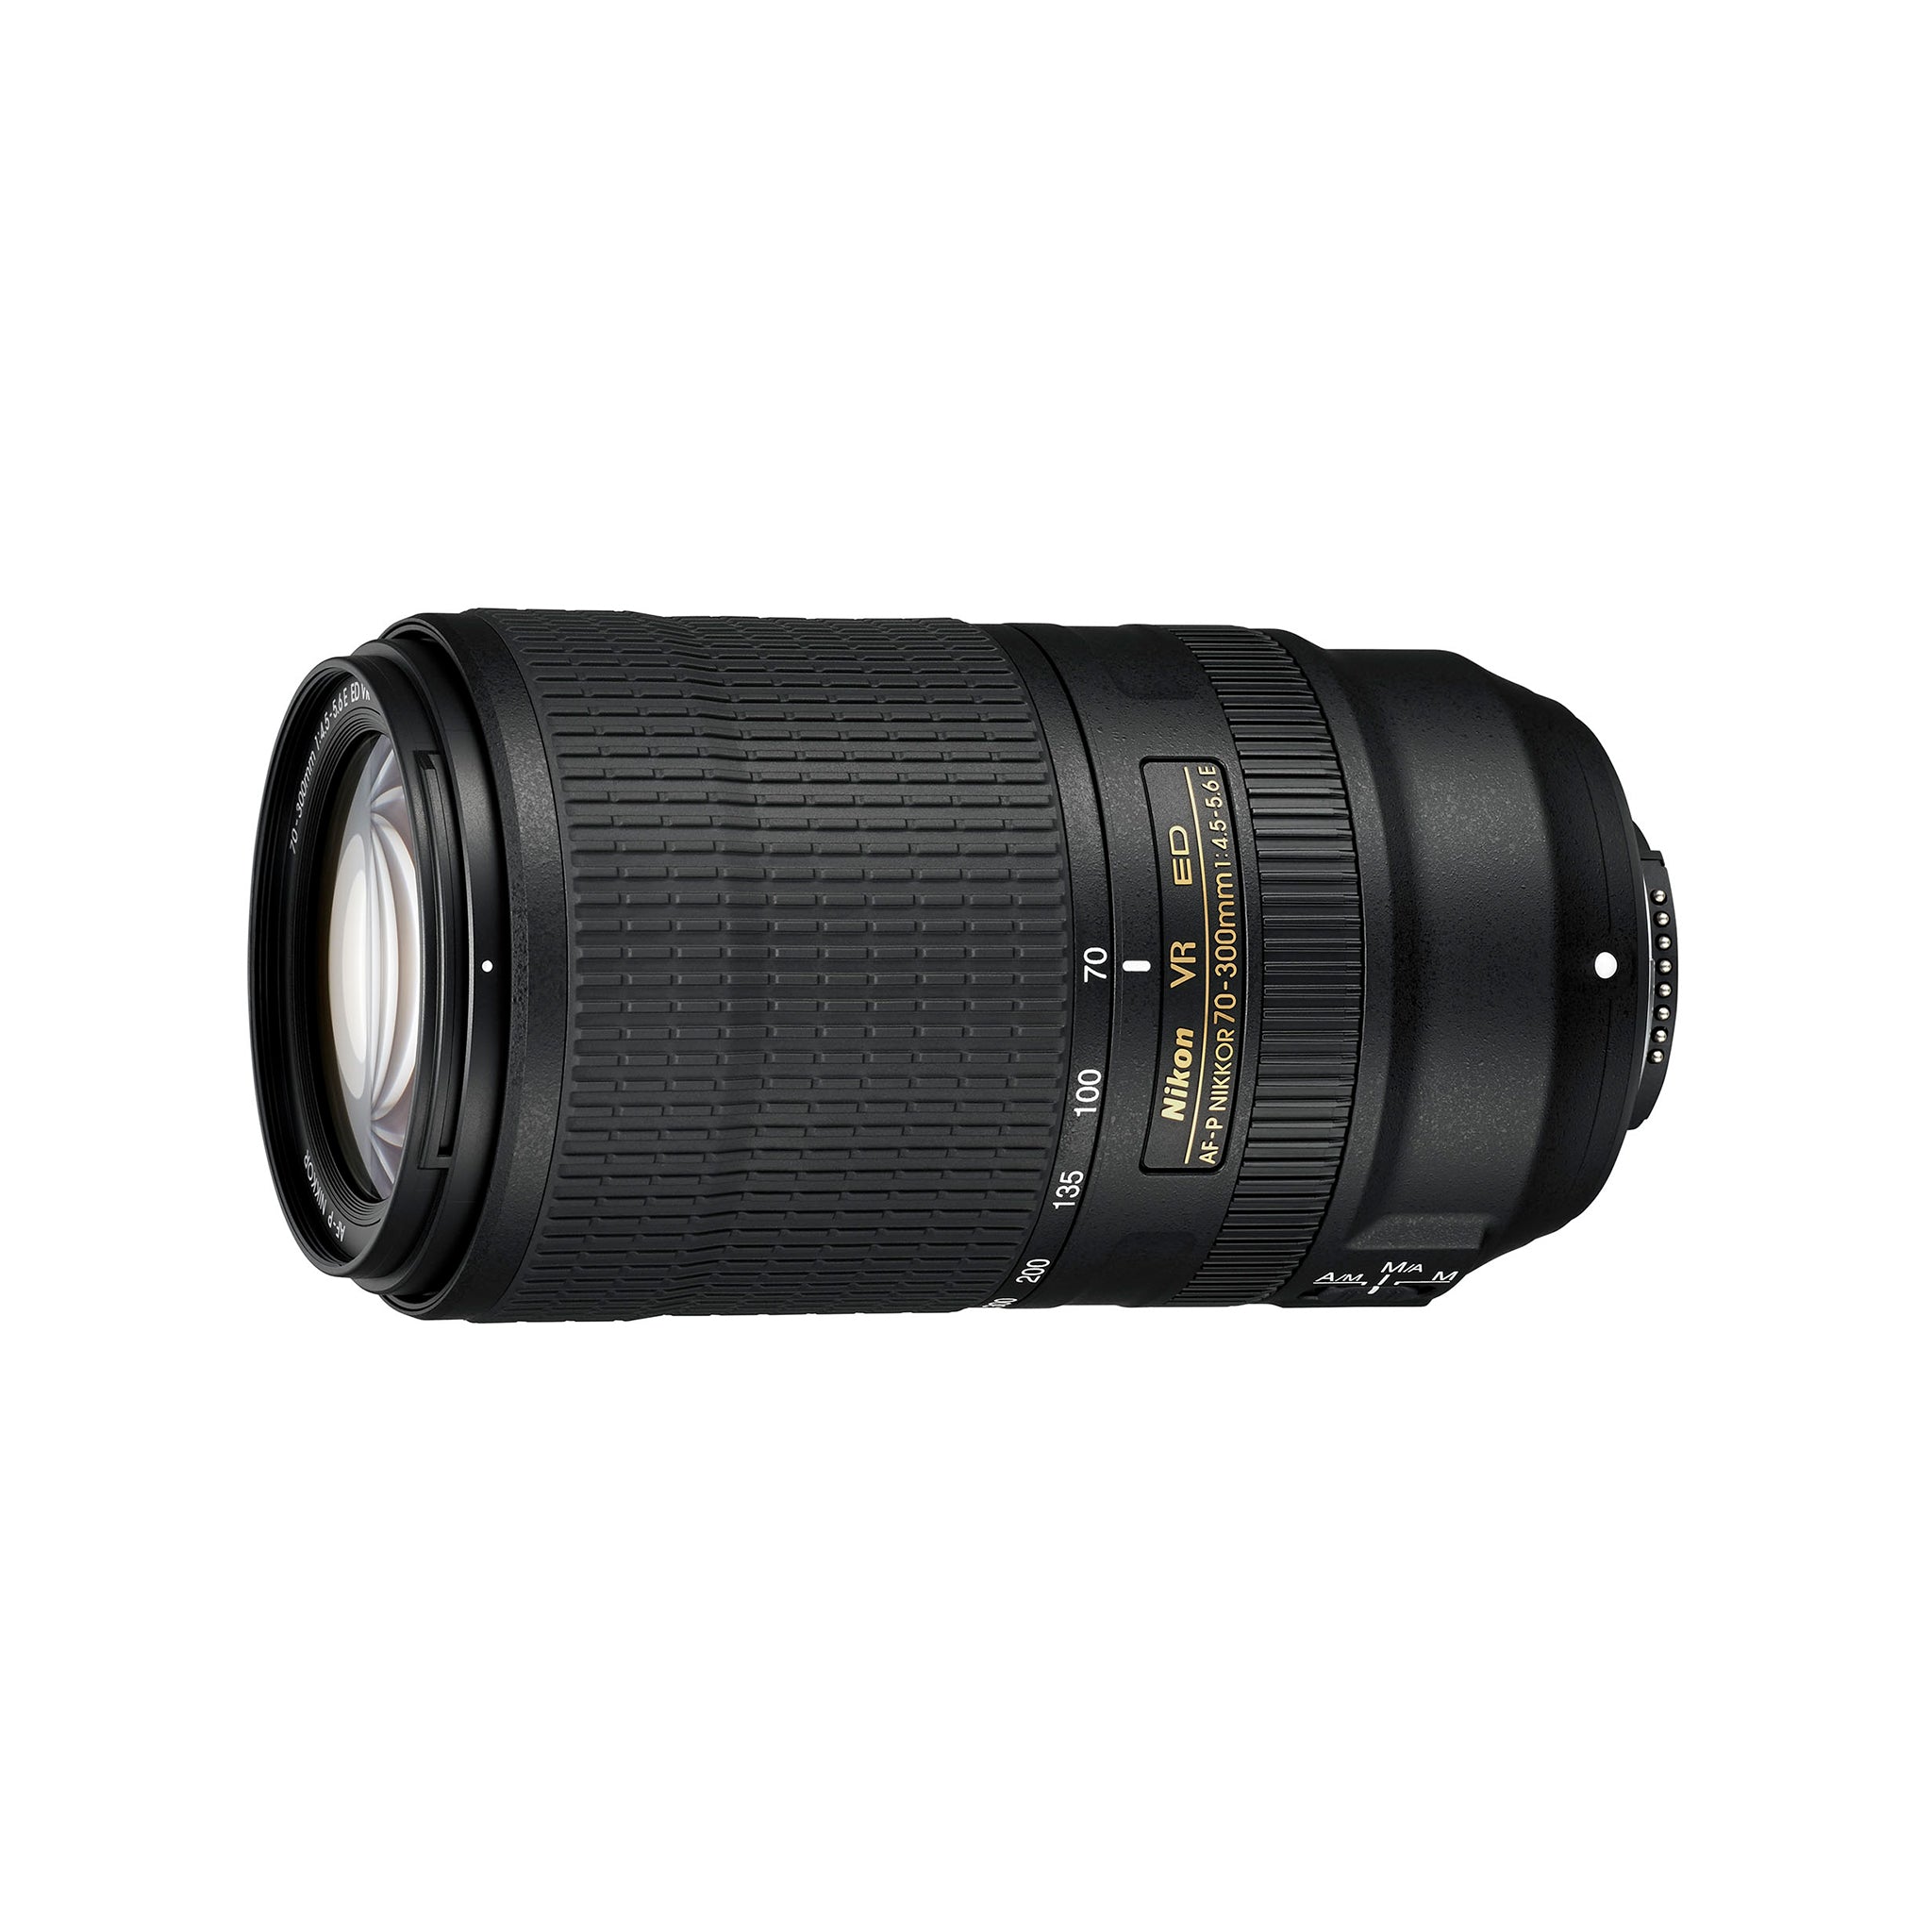 Nikon AF-P 70-300mm F4.5-6.3G ED DX Lens